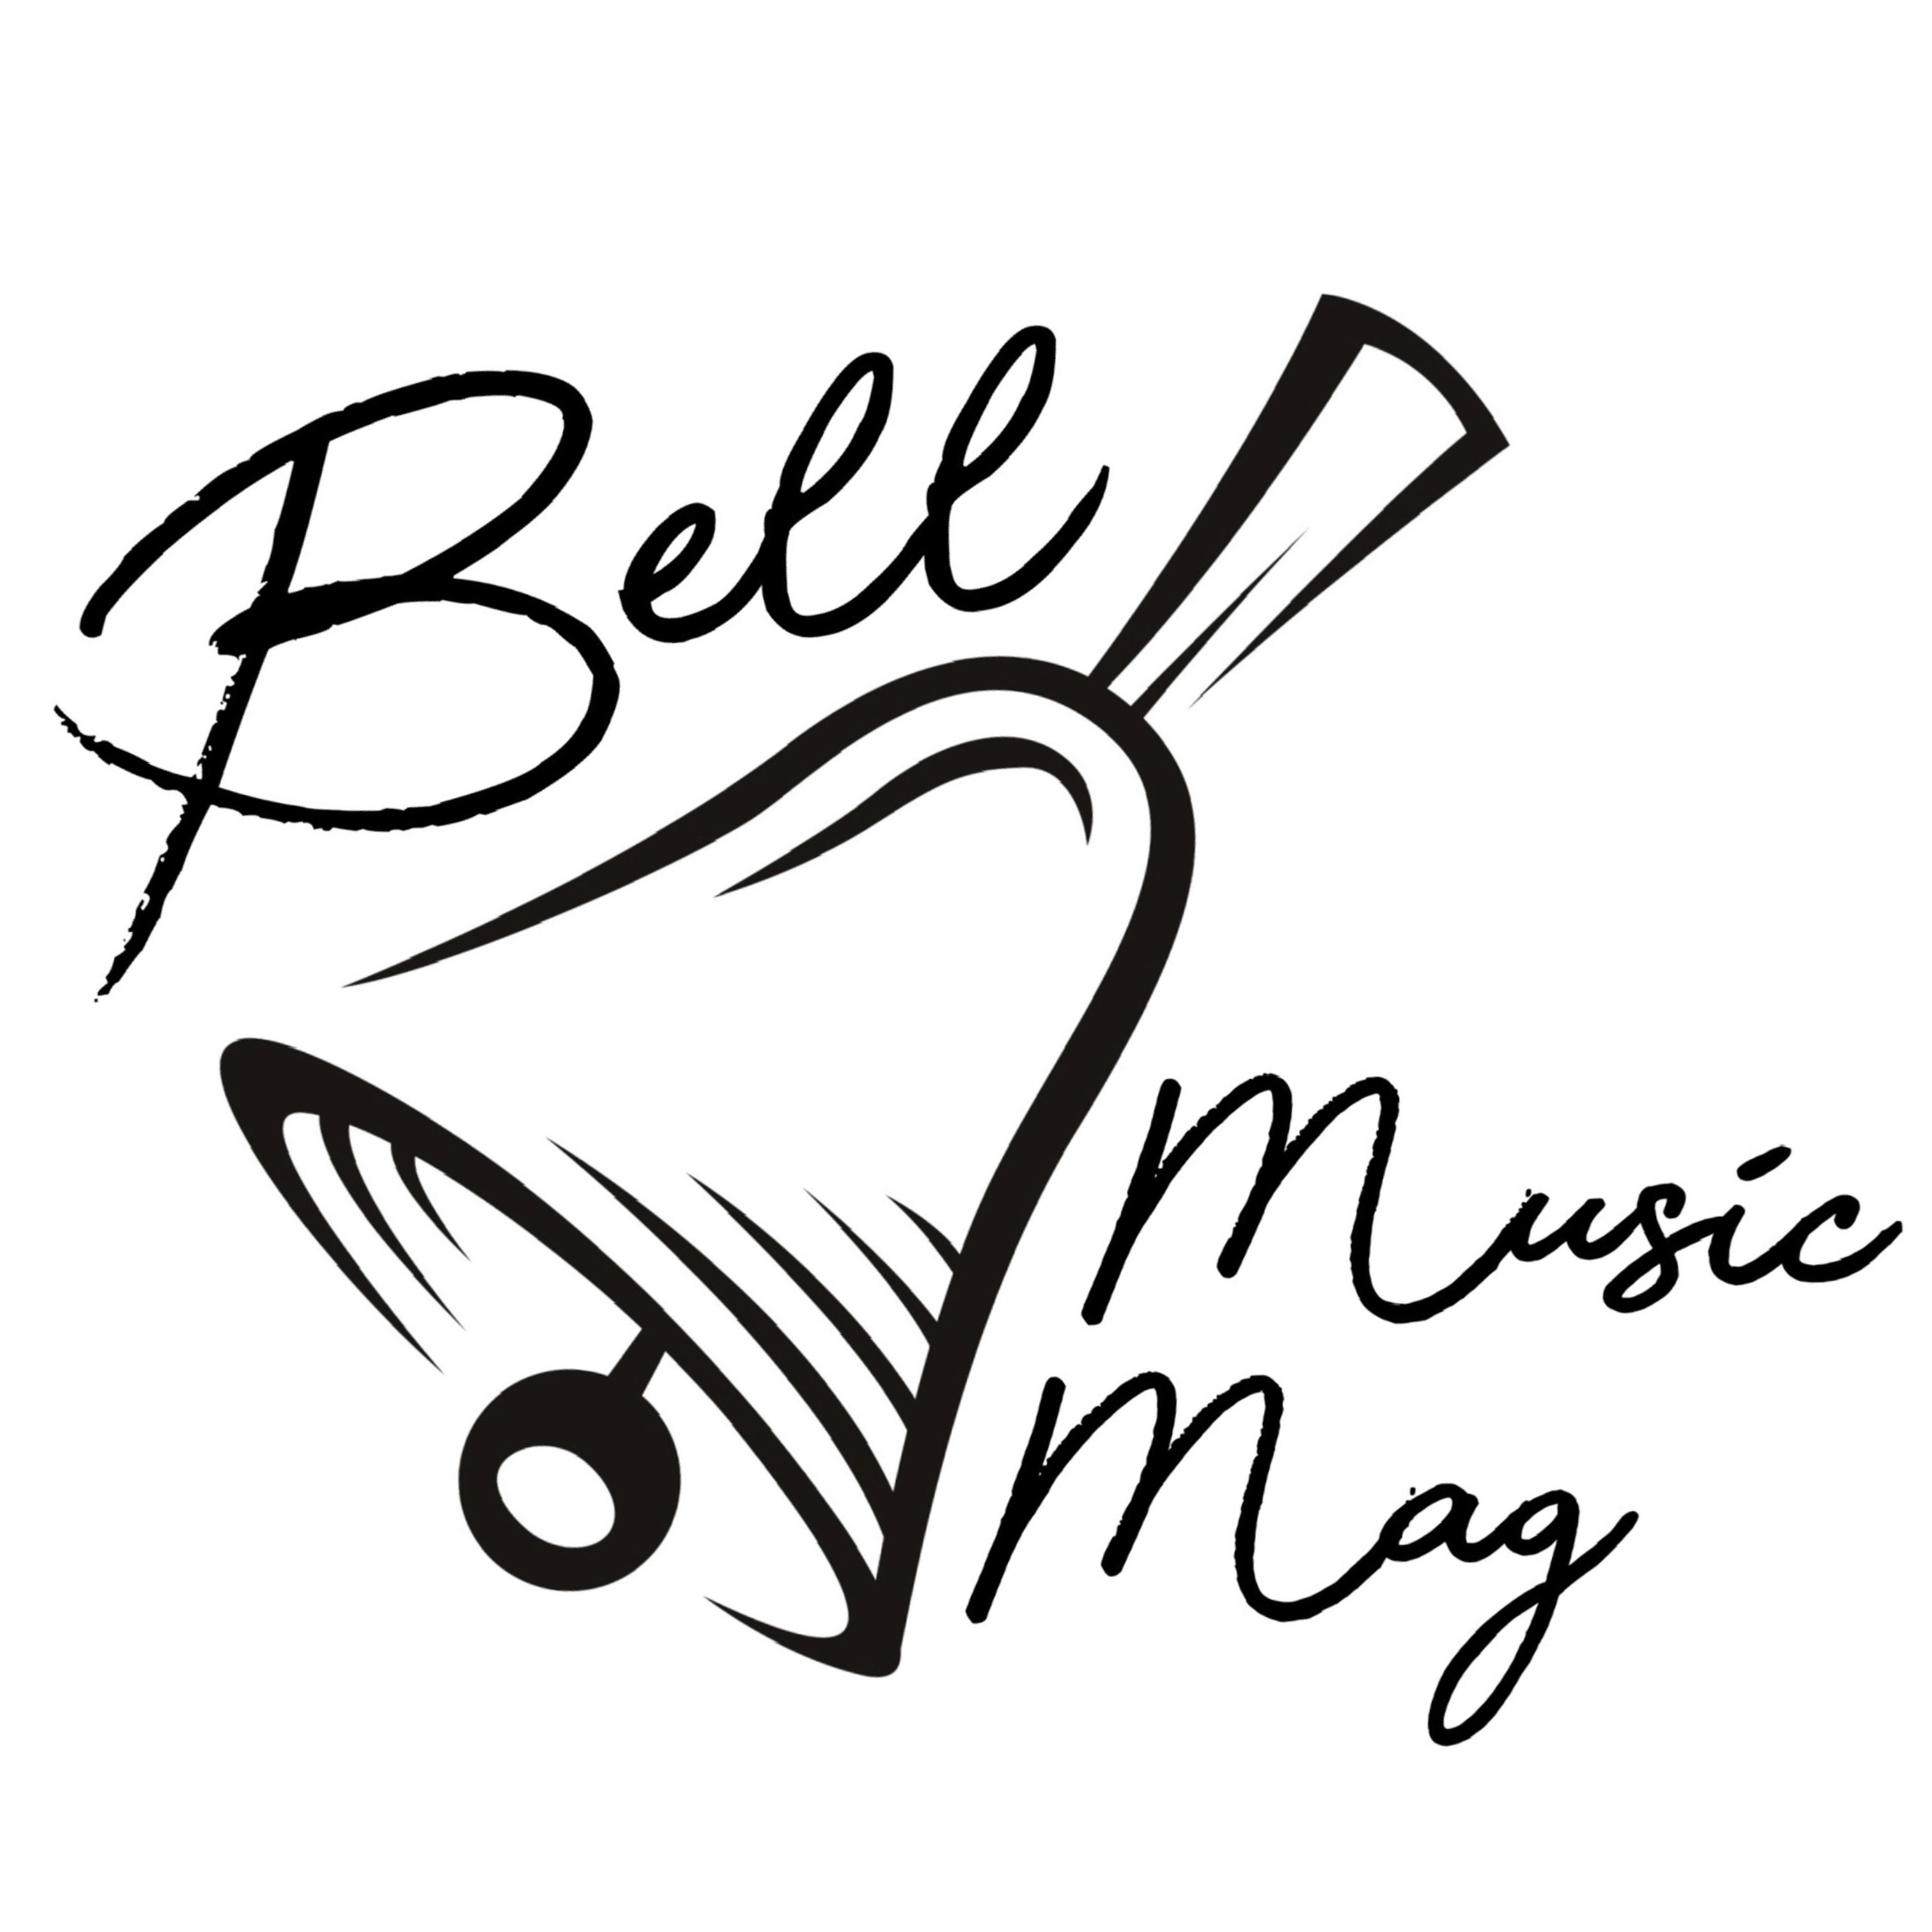 Bell Music Magazine